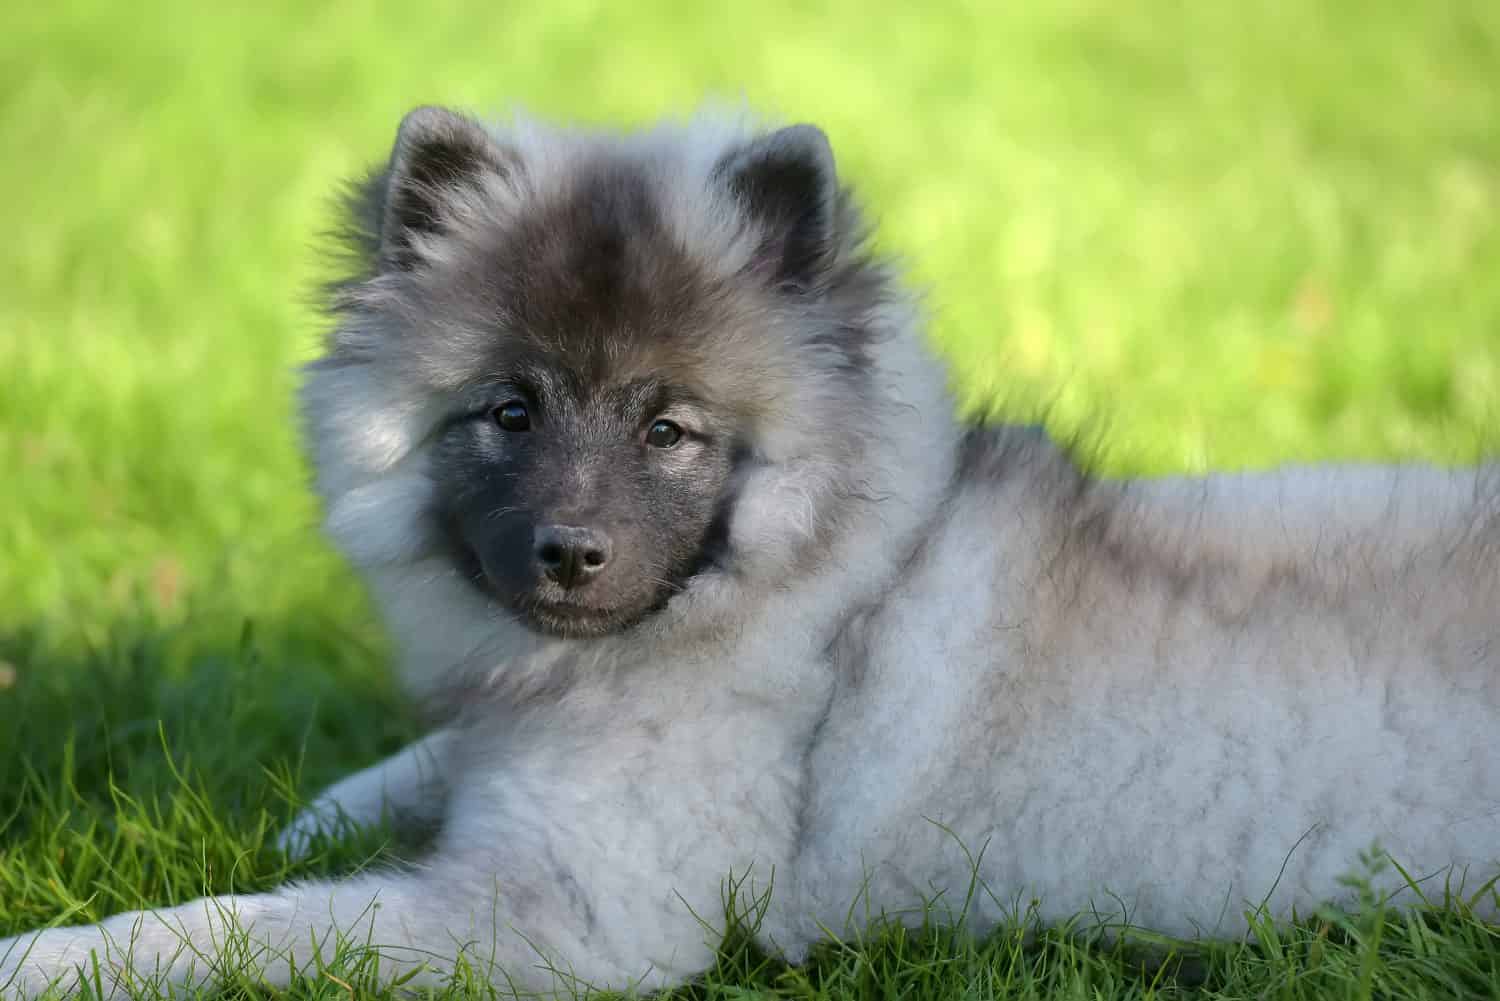 keeshond wolfspitz puppy happy in summer on green grass